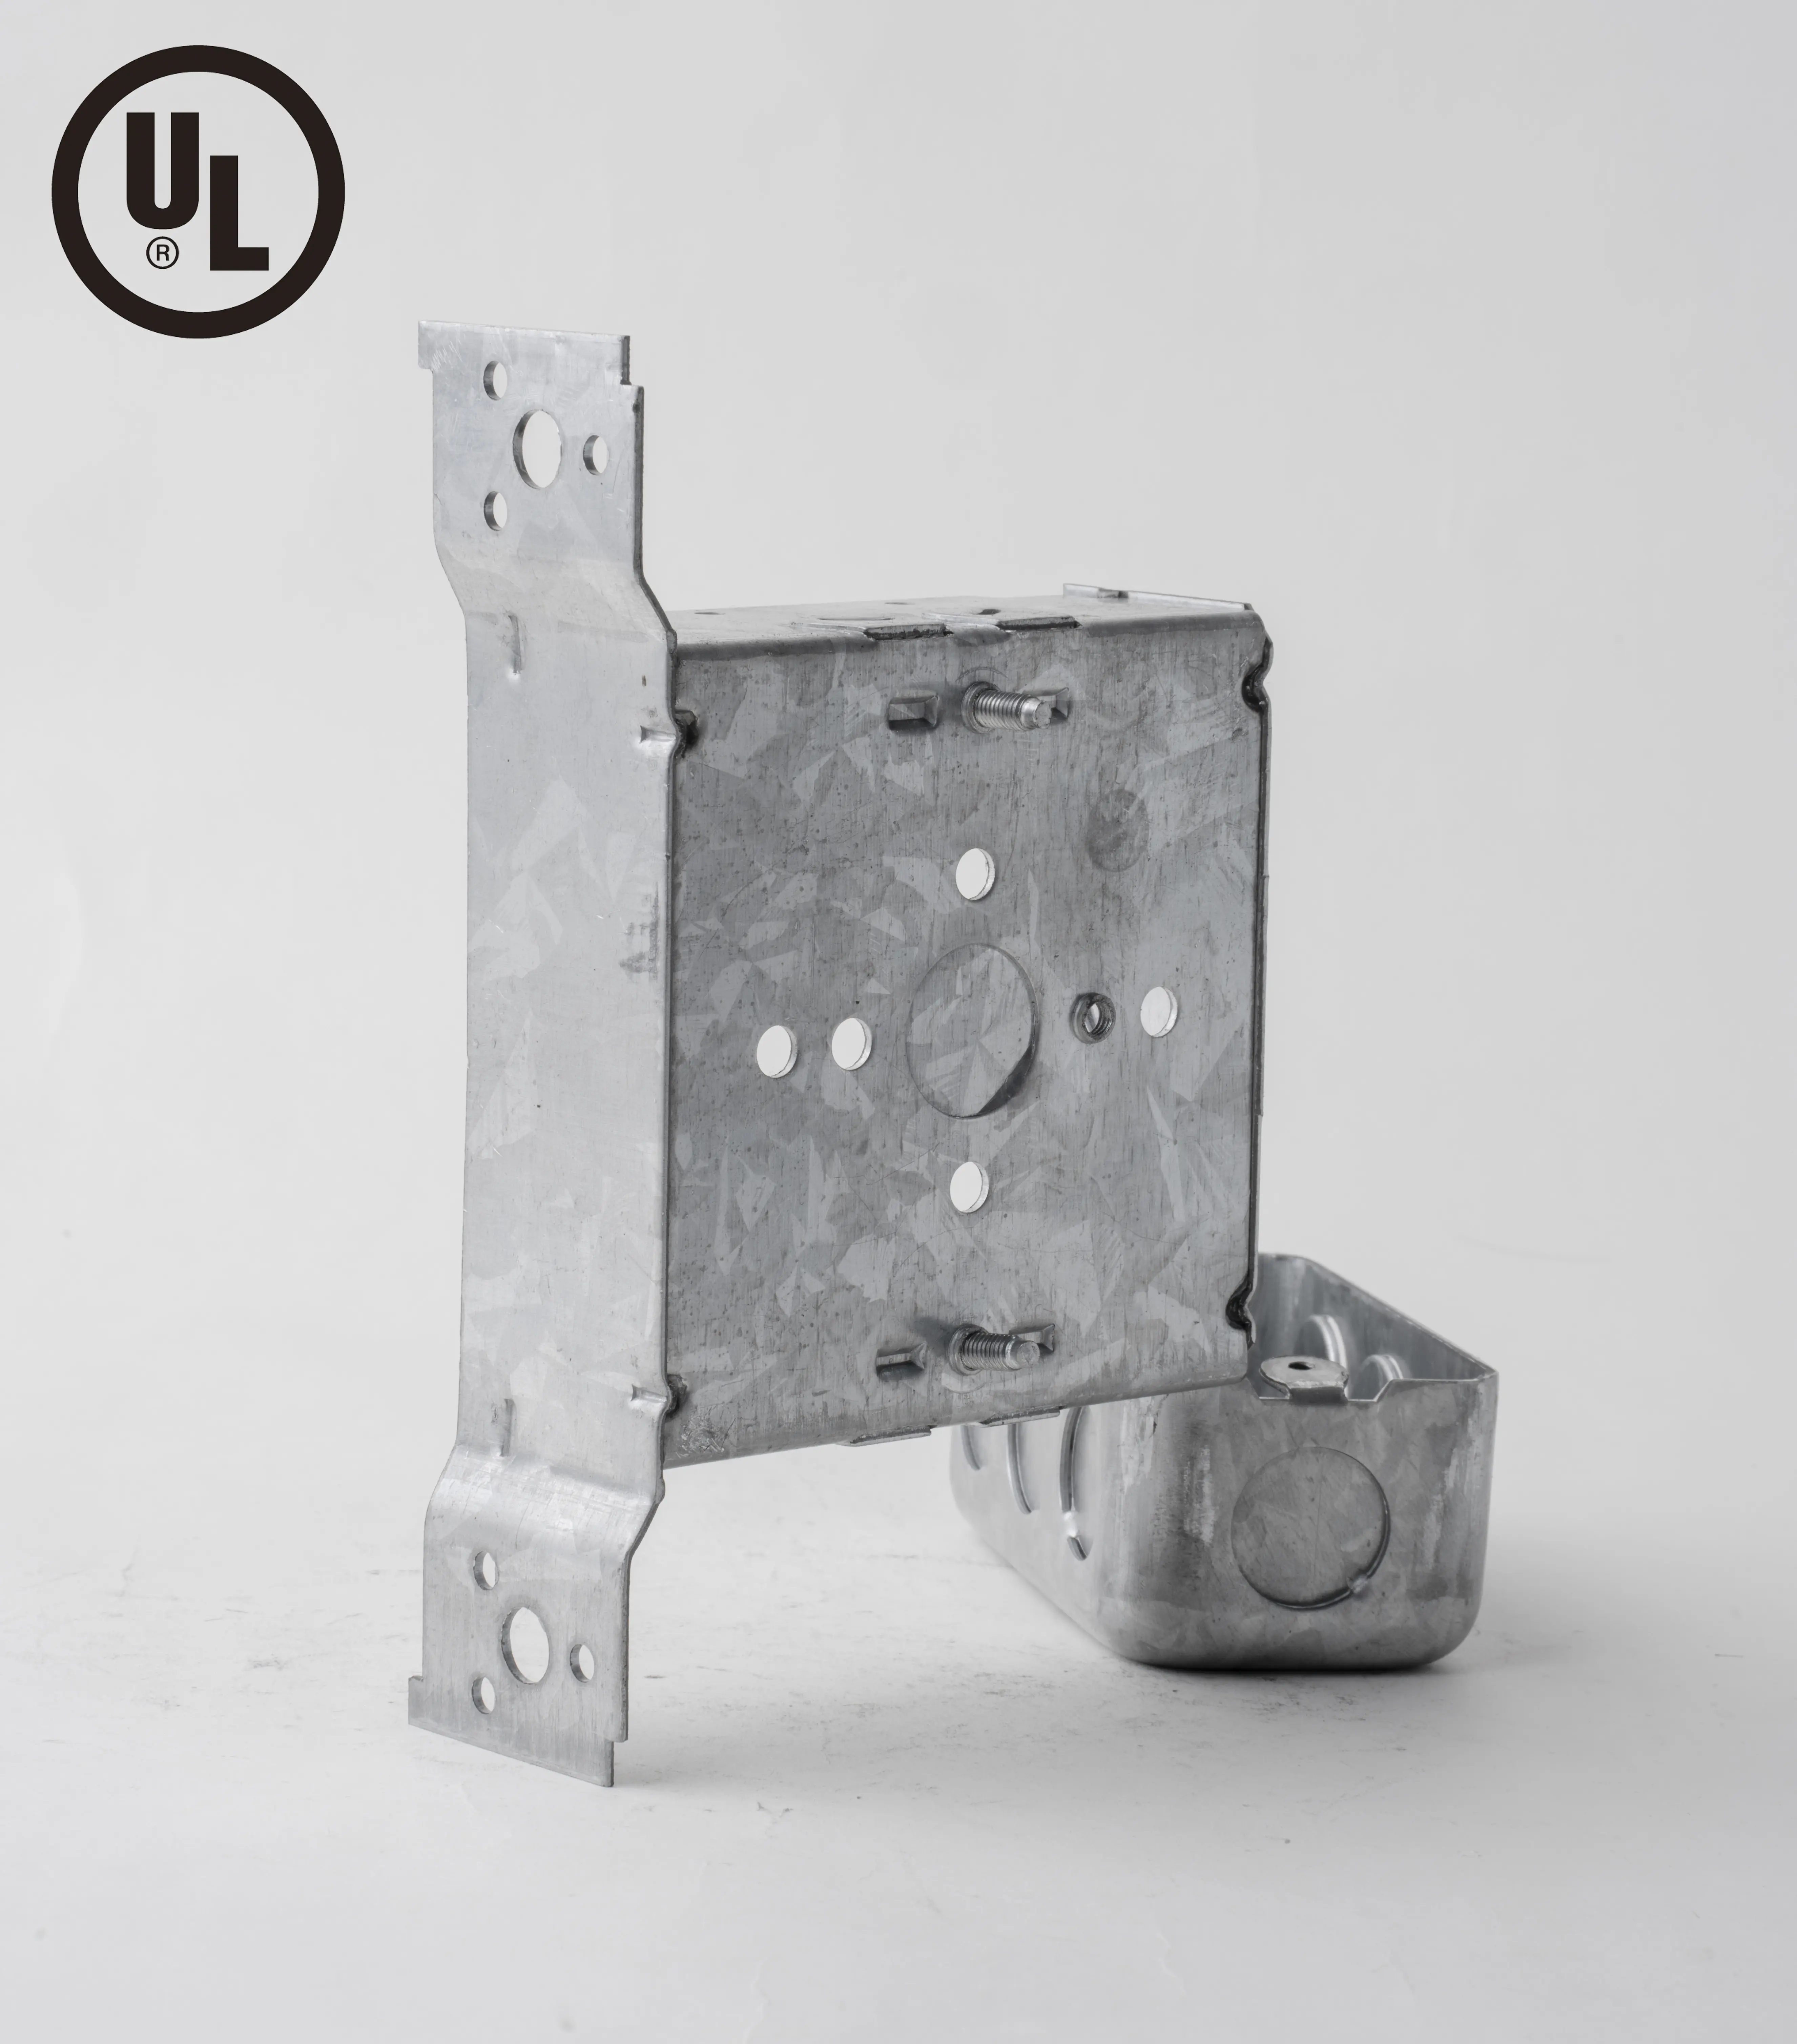 Boîte de jonction électrique de niveau de protection IP54, certifiée UL, carrée de quatre pouces, de 1 à 1/2 pouces, soudée au mur en acier.